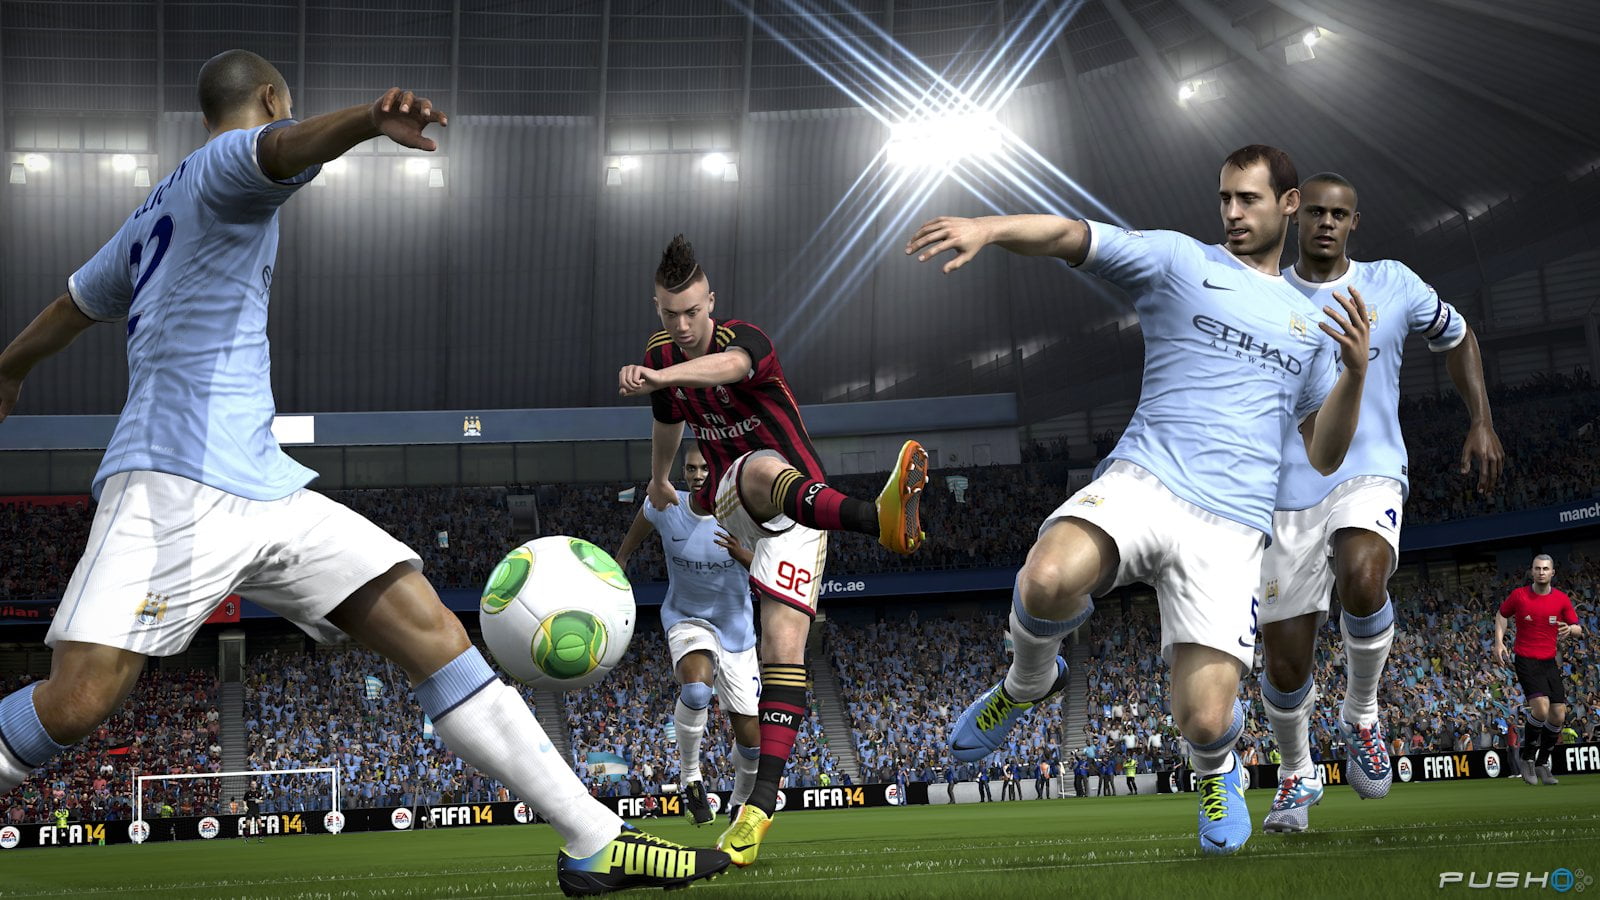 FO4 ra mắt GamePlay khó chịu nhất của FIFA từ trước đến nay 2